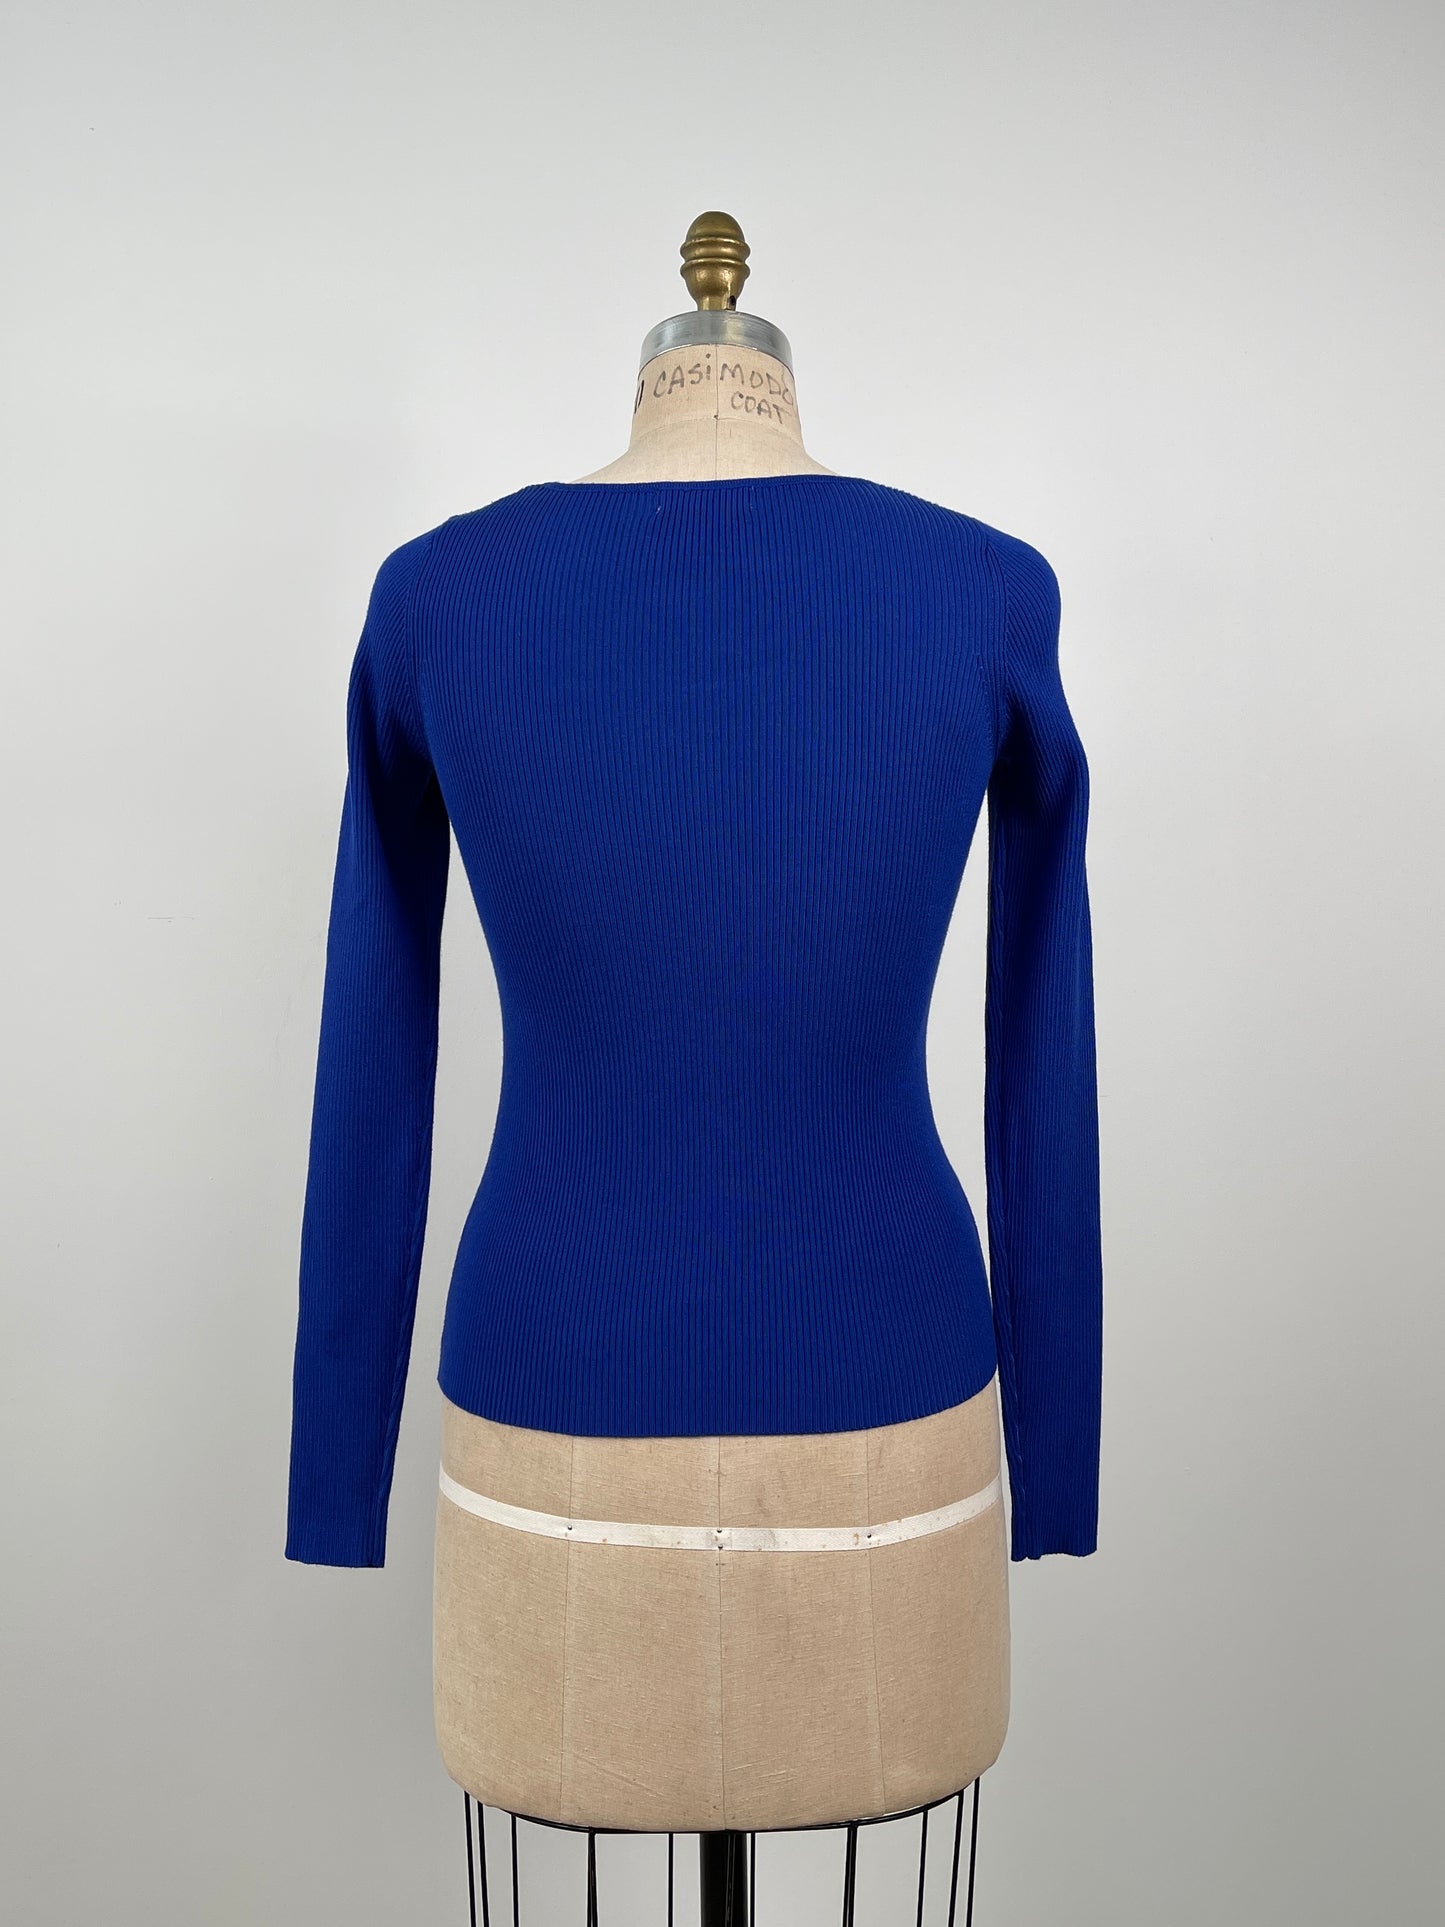 Chandail ajusté en tricot bleu électrique (XS/S)